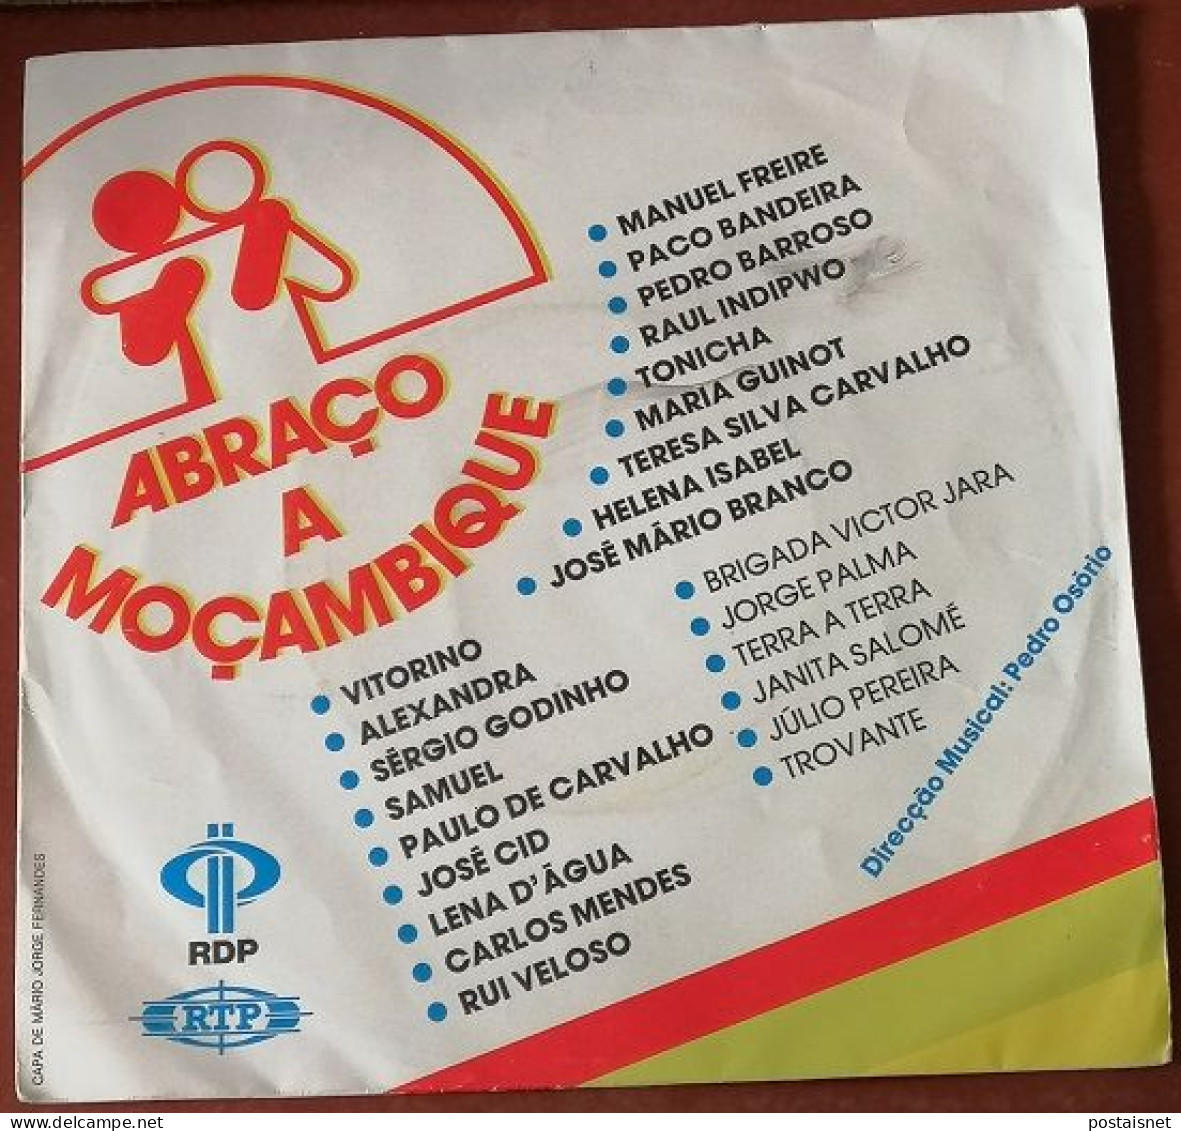 Single Abraço A Moçambique – 1985 – RDP E RTP - Wereldmuziek